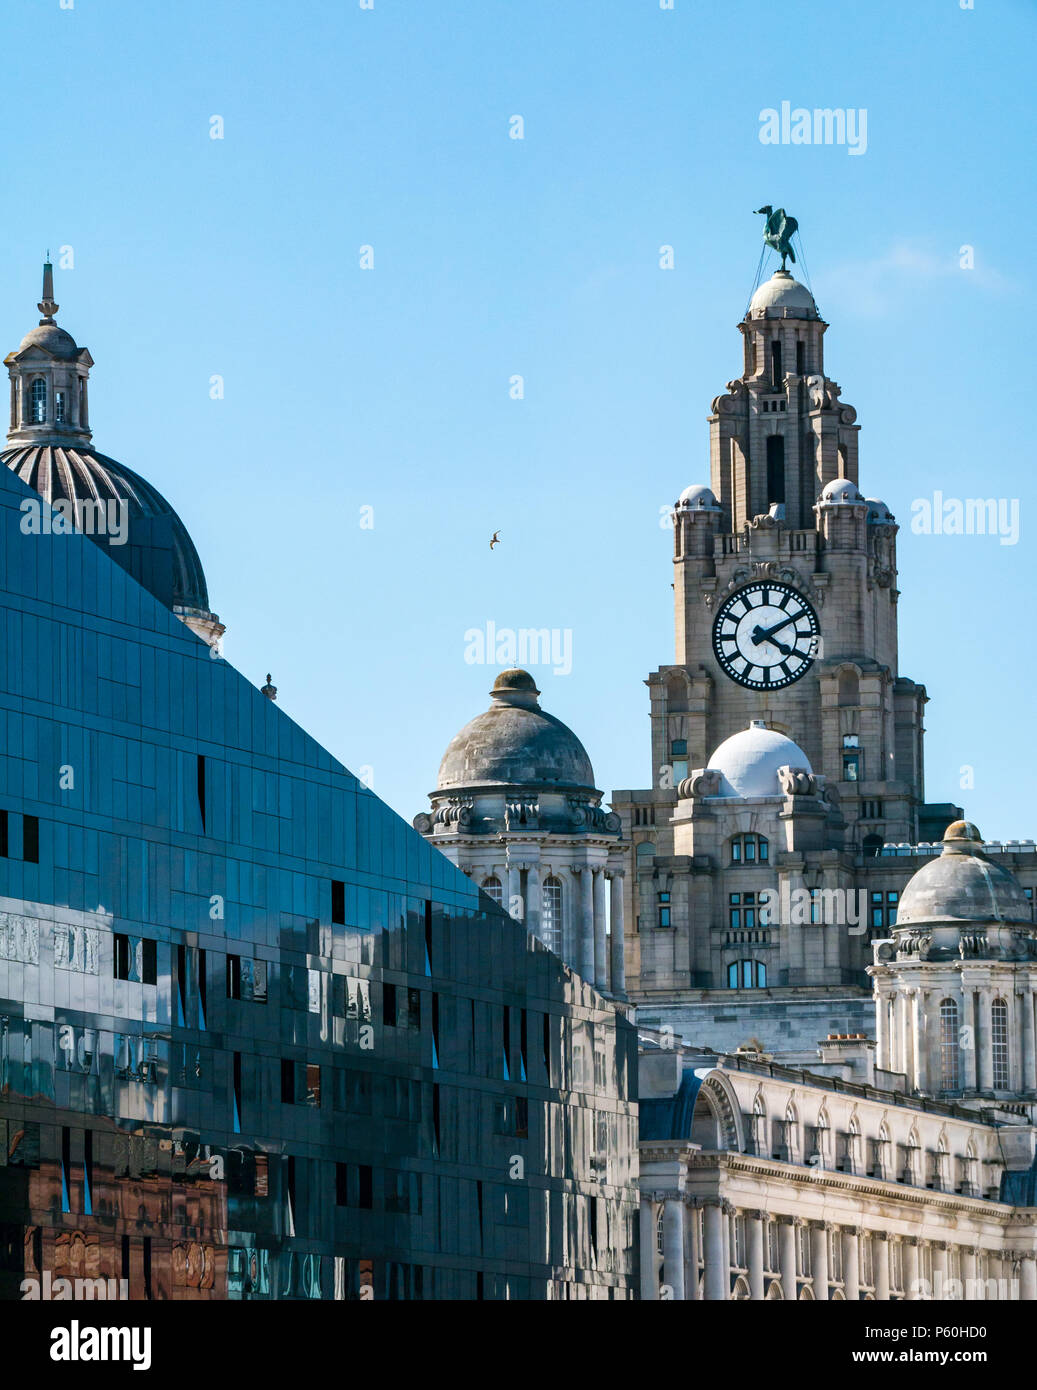 Blick auf den Turm des Royal Liver Building mit Großbritannien größter Uhr und Leber Vogel, Pier Head, Liverpool, England, UK mit modernen Glasgebäude Reflexionen Stockfoto